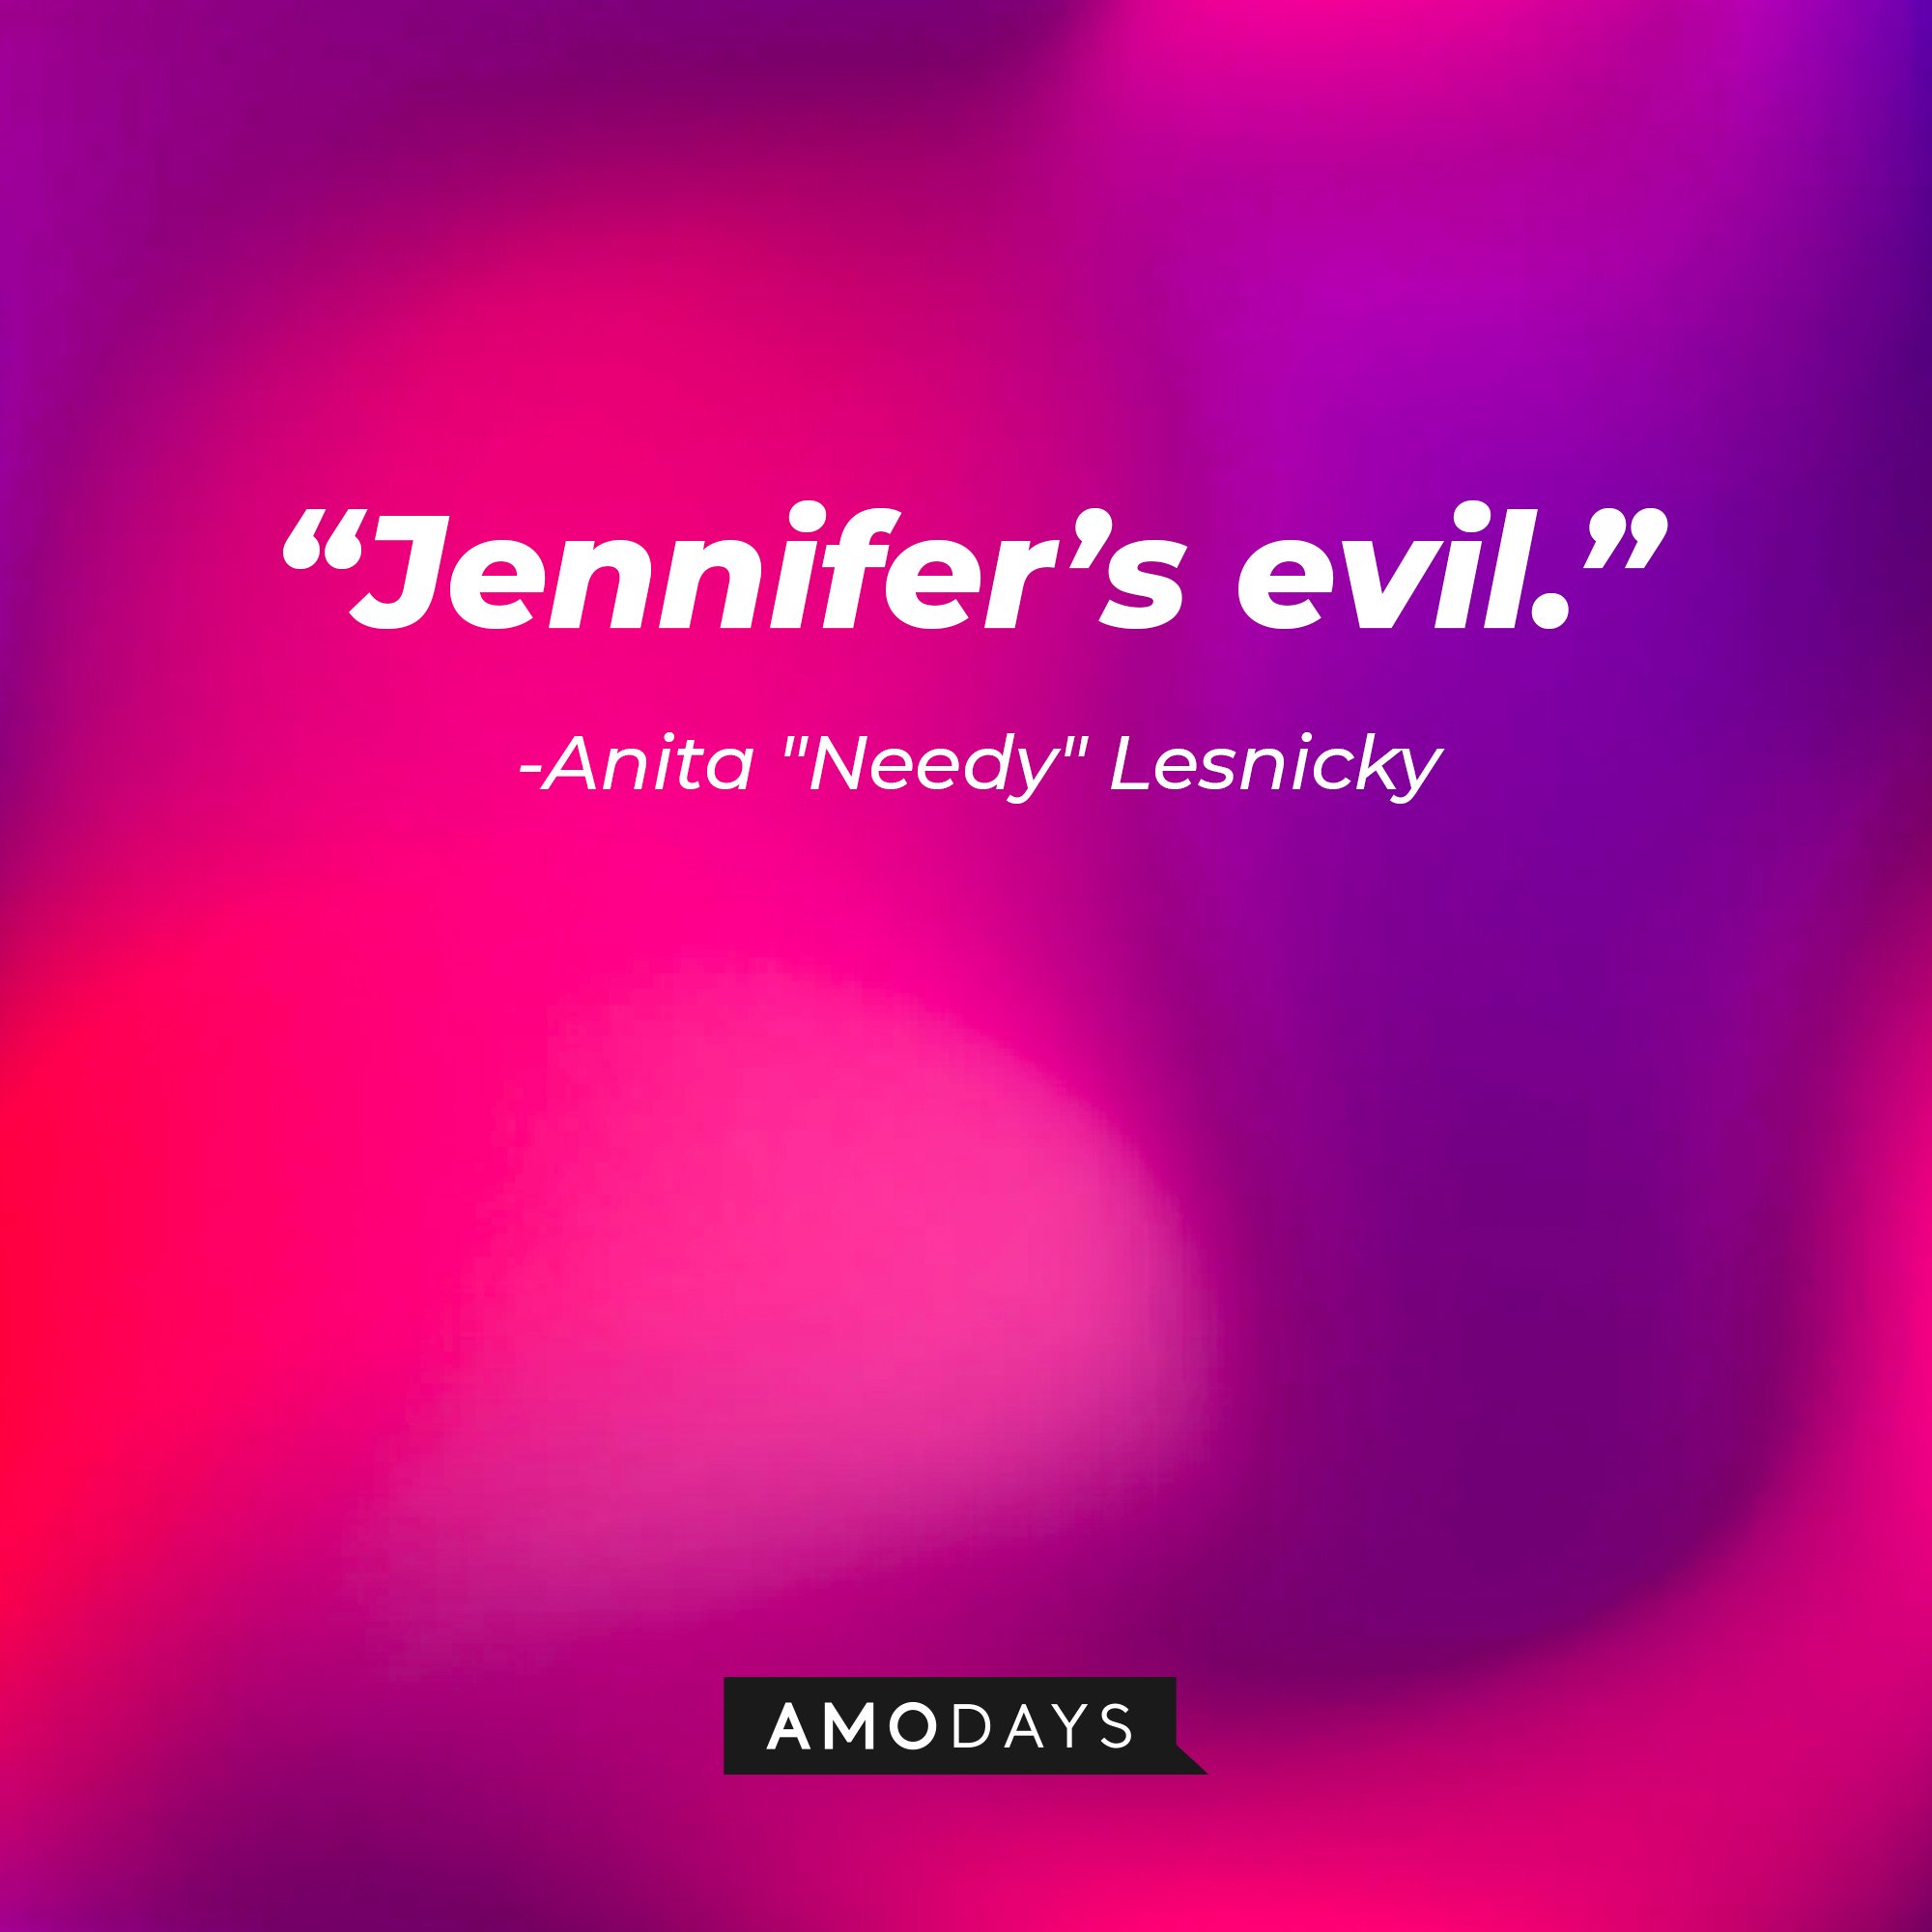 Anita "Needy" Lesnicky’s quote: “Jennifer’s evil.” |Image: AmoDays